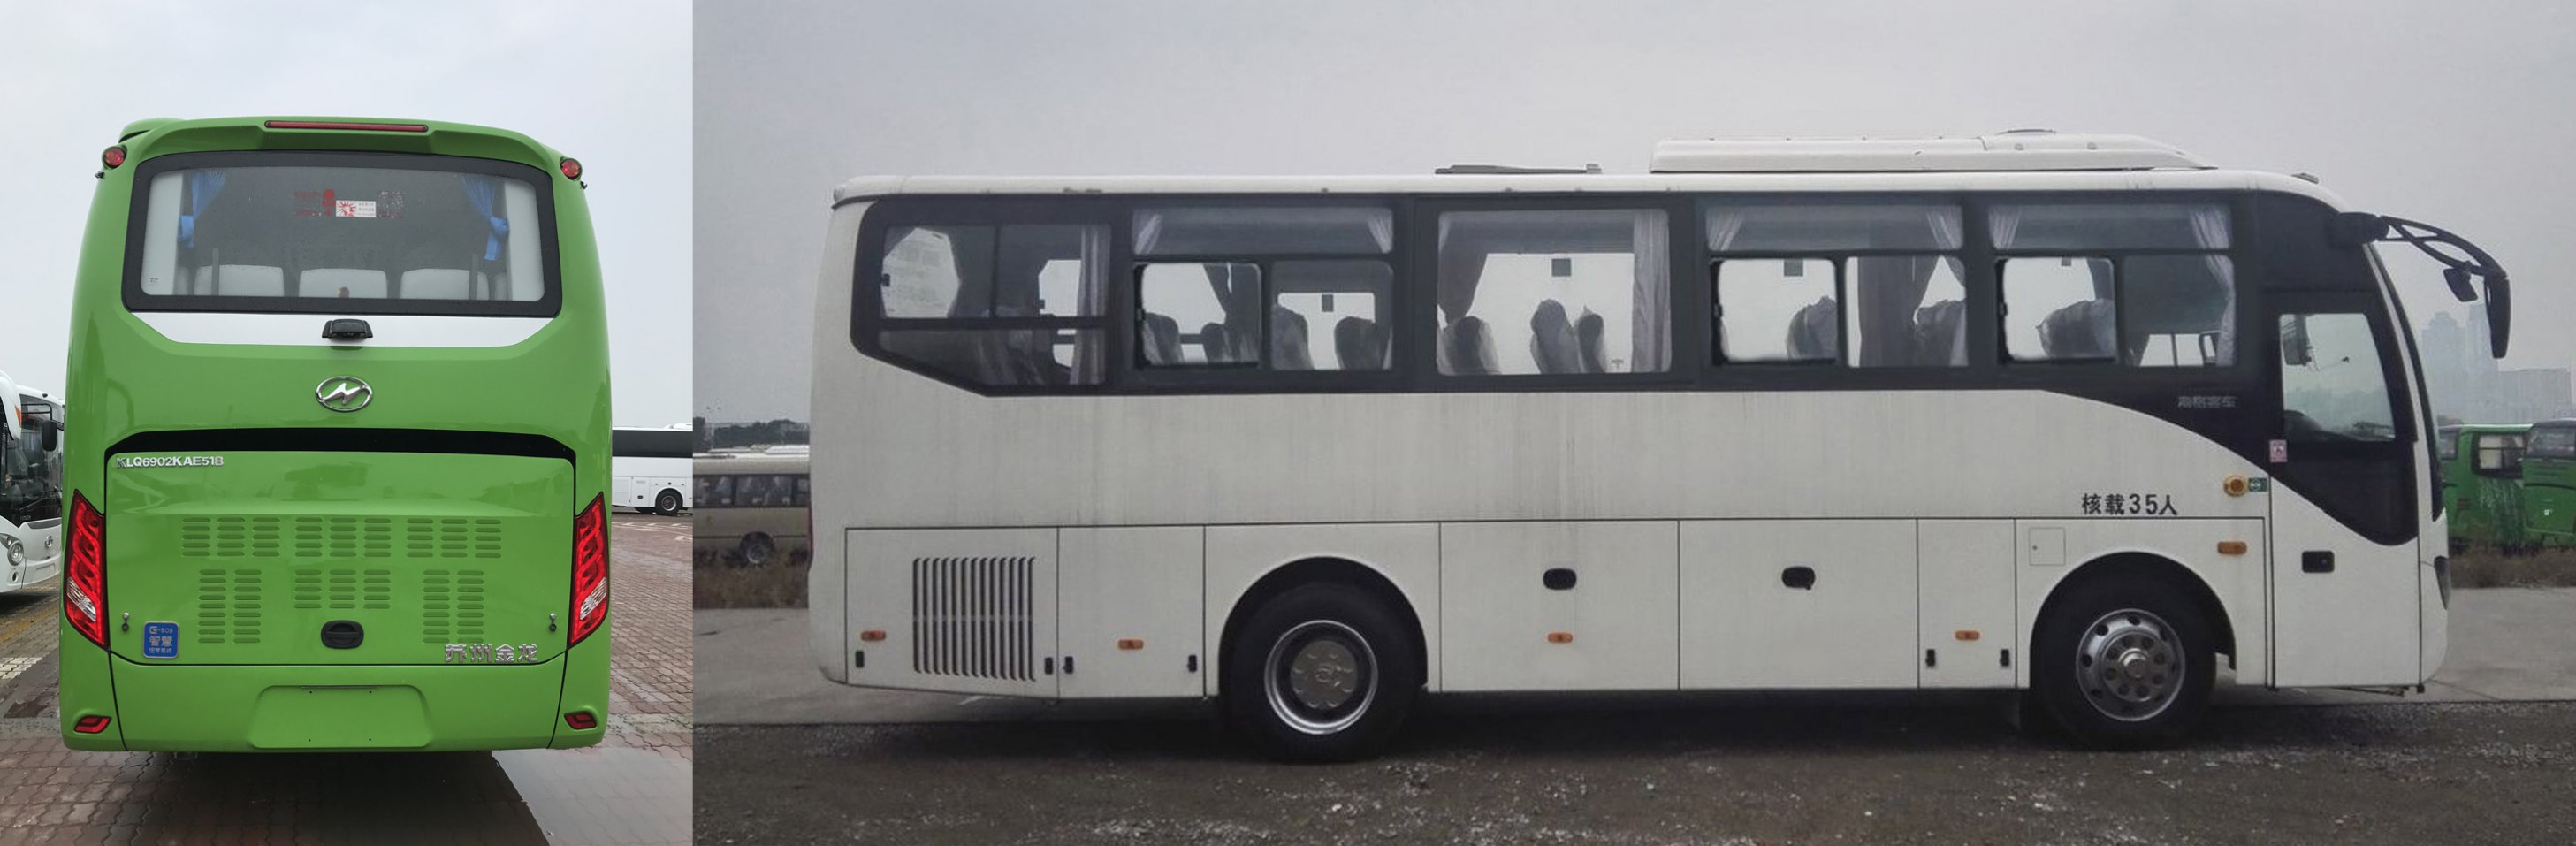 苏州金龙 海豹 245马力 24-38人 公路客运客车(KLQ6902KAE51B)整拆件